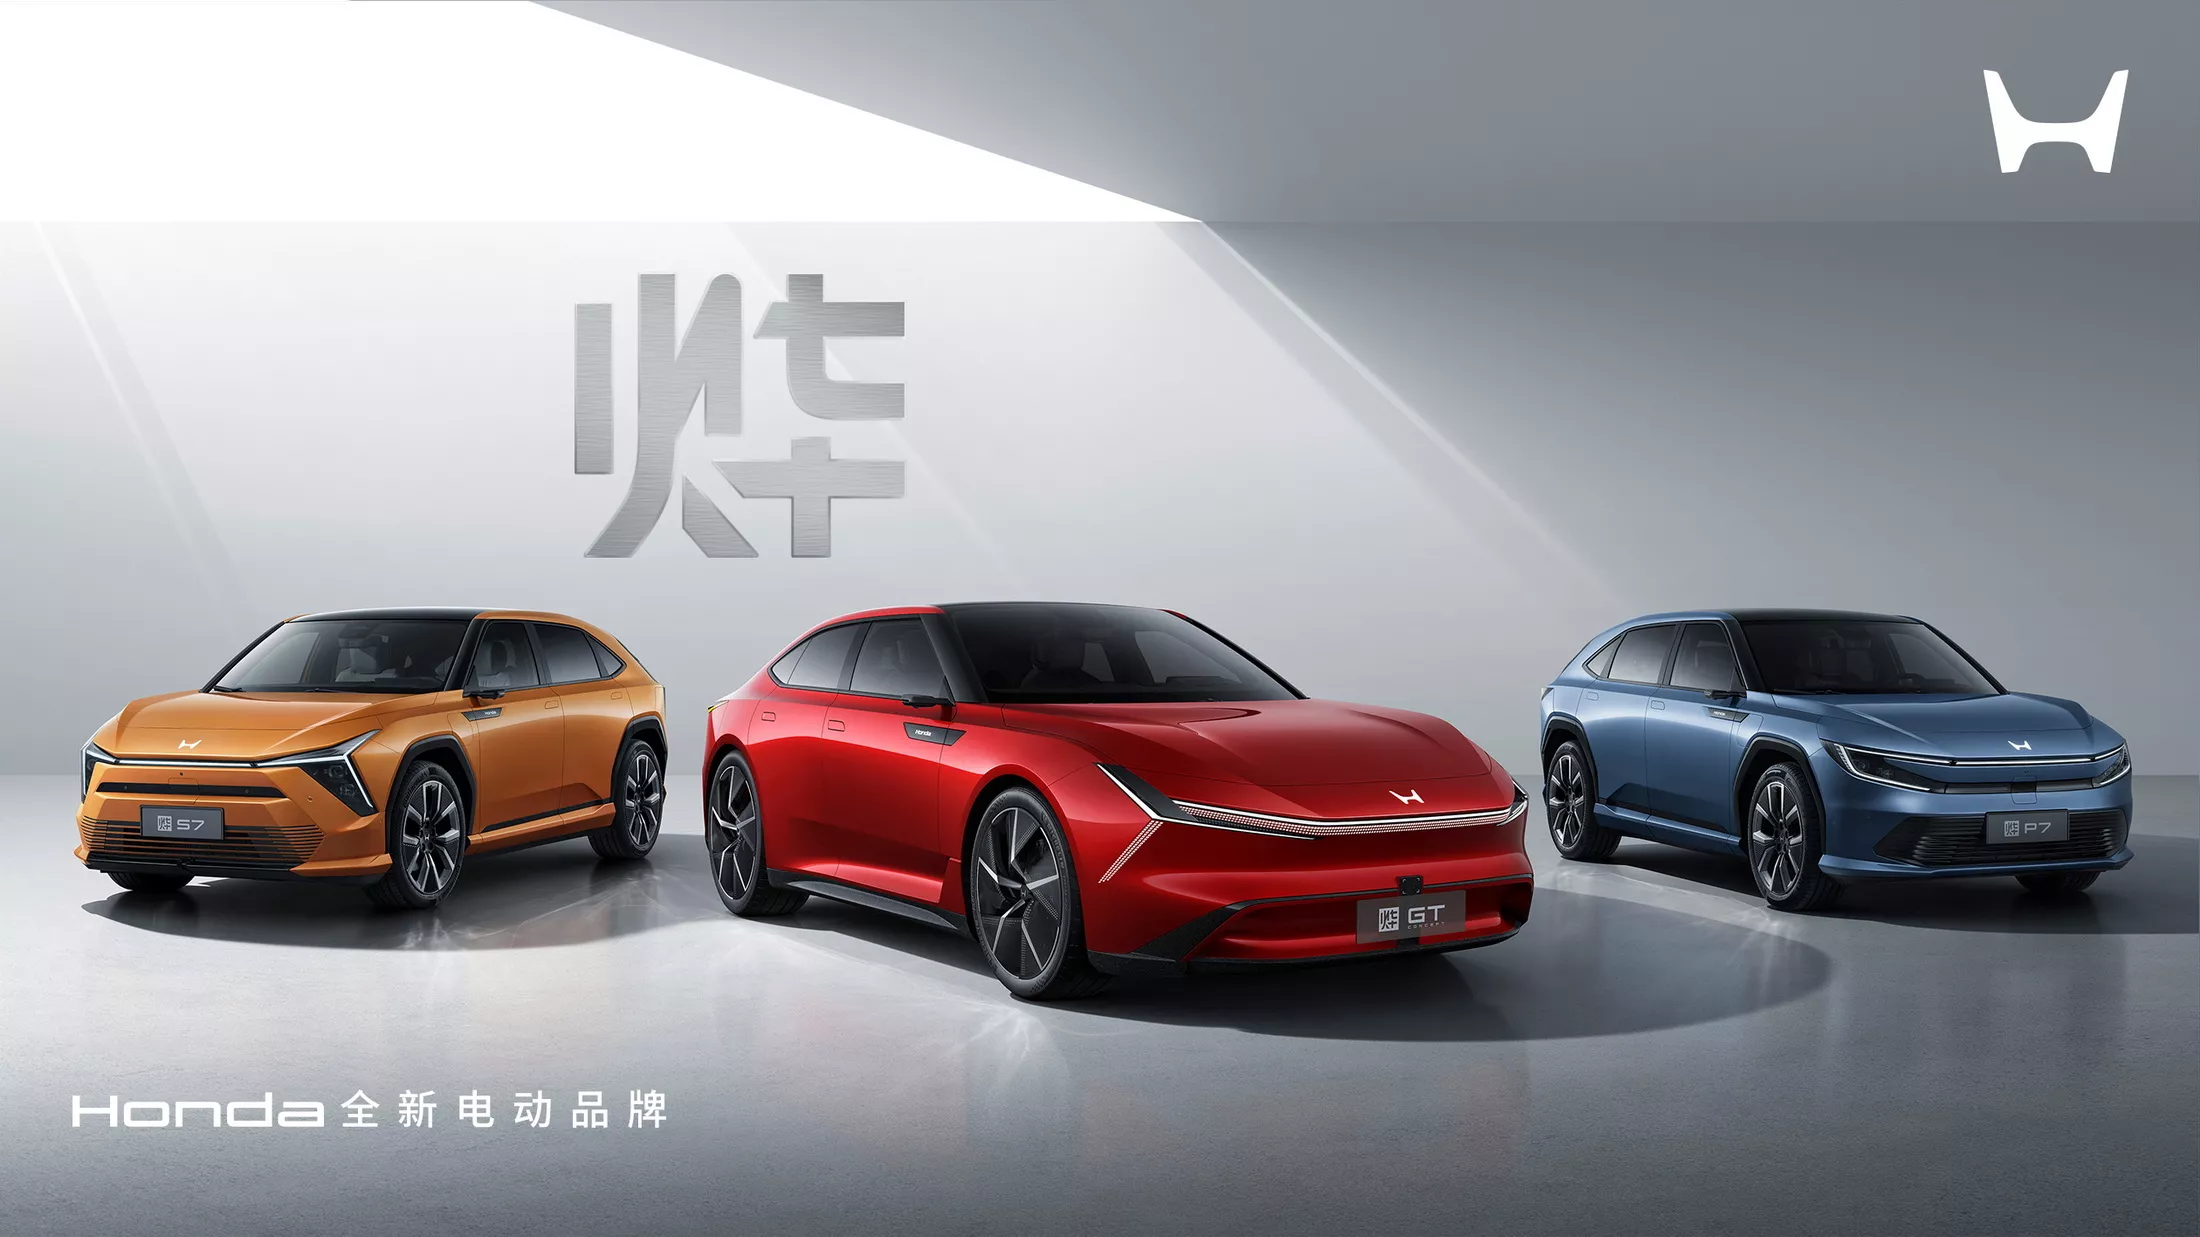 Honda ra mắt loạt xe điện mới: Thiết kế ấn tượng, đối đầu BYD ngay tại Trung Quốc